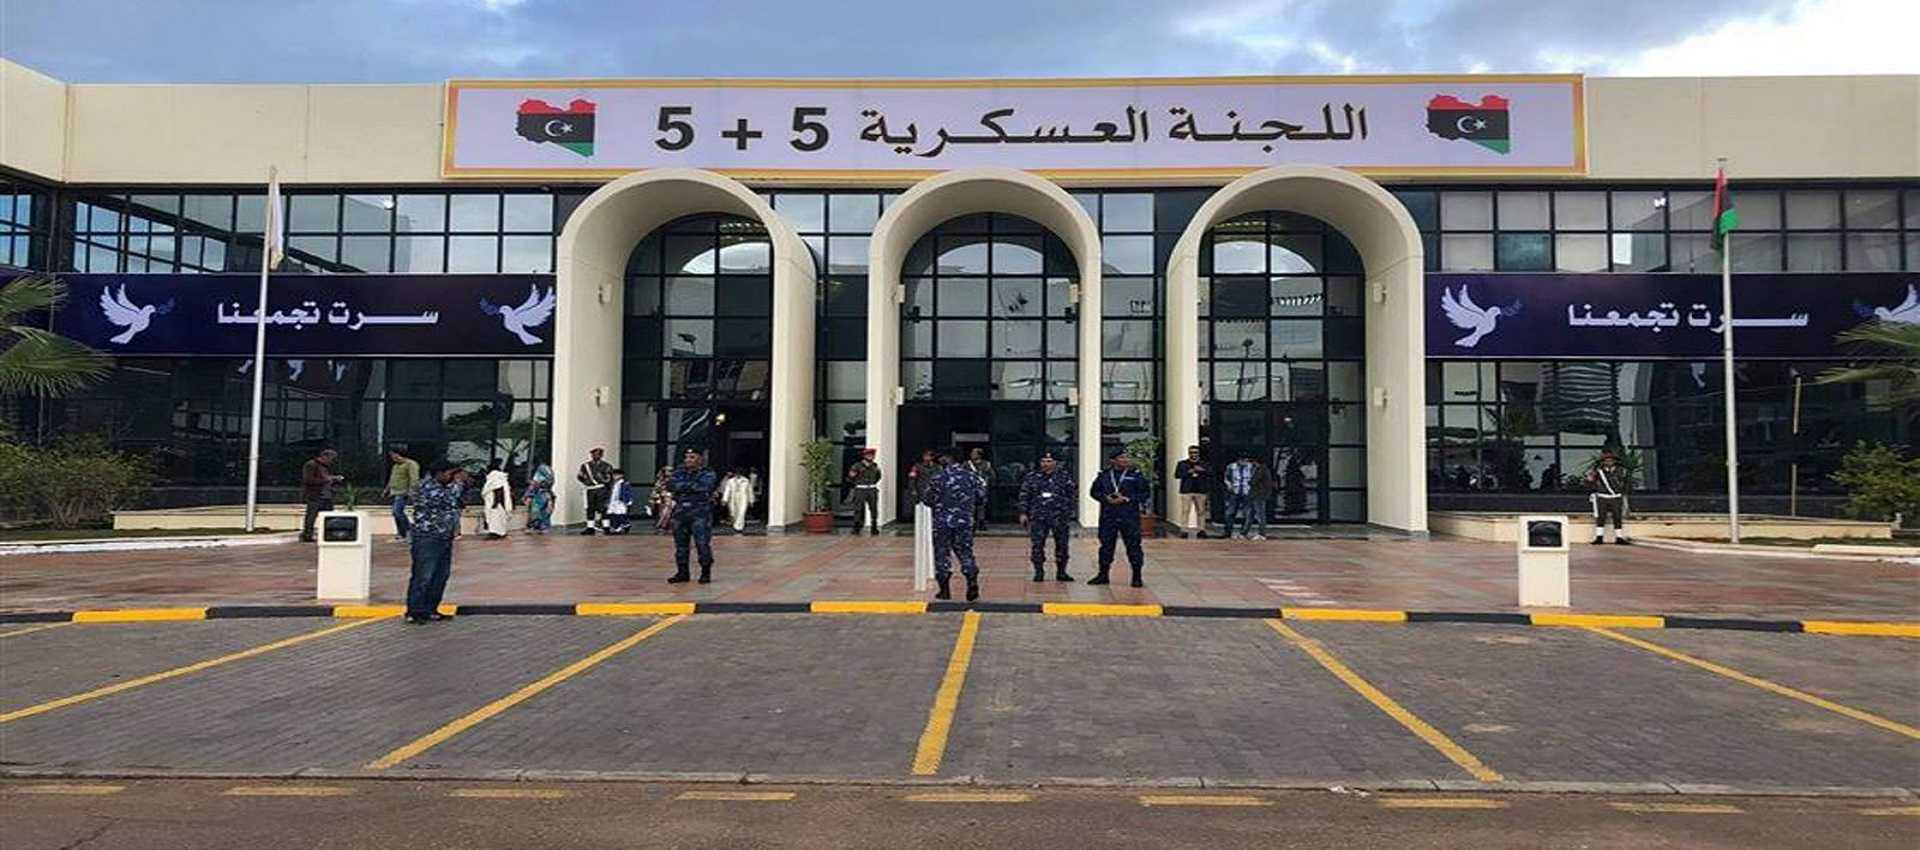 اجتماع اللجنة العسكرية الليبية "5+5" في القاهرة اليوم